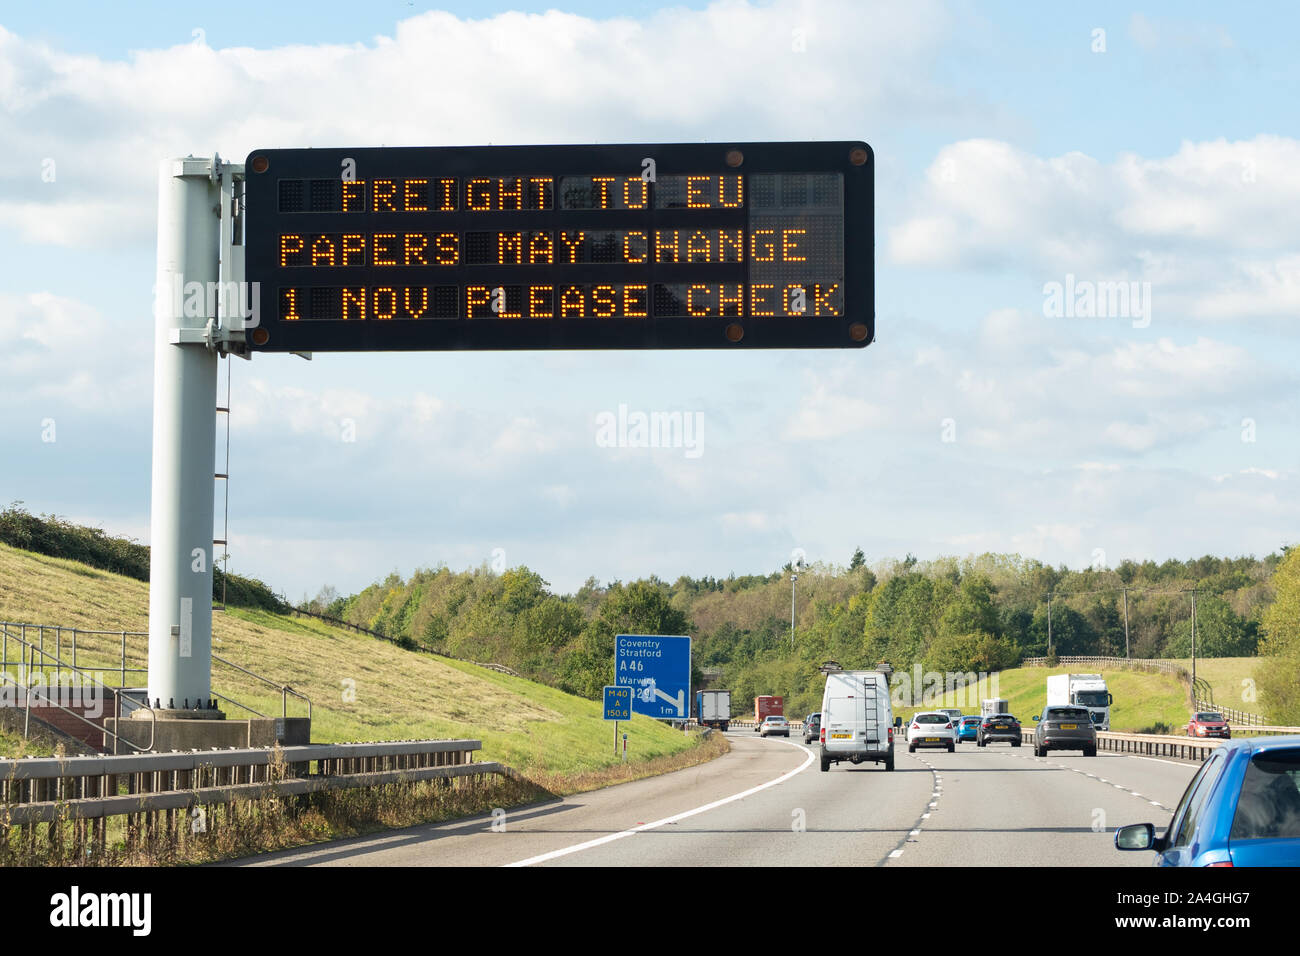 Preparazione Brexit - informazioni sulla matrice di autostrada segno - "trasporto di documenti UE può cambiare 1 nov. Si prega di controllare' - M40 vicino a Coventry, England, Regno Unito Foto Stock